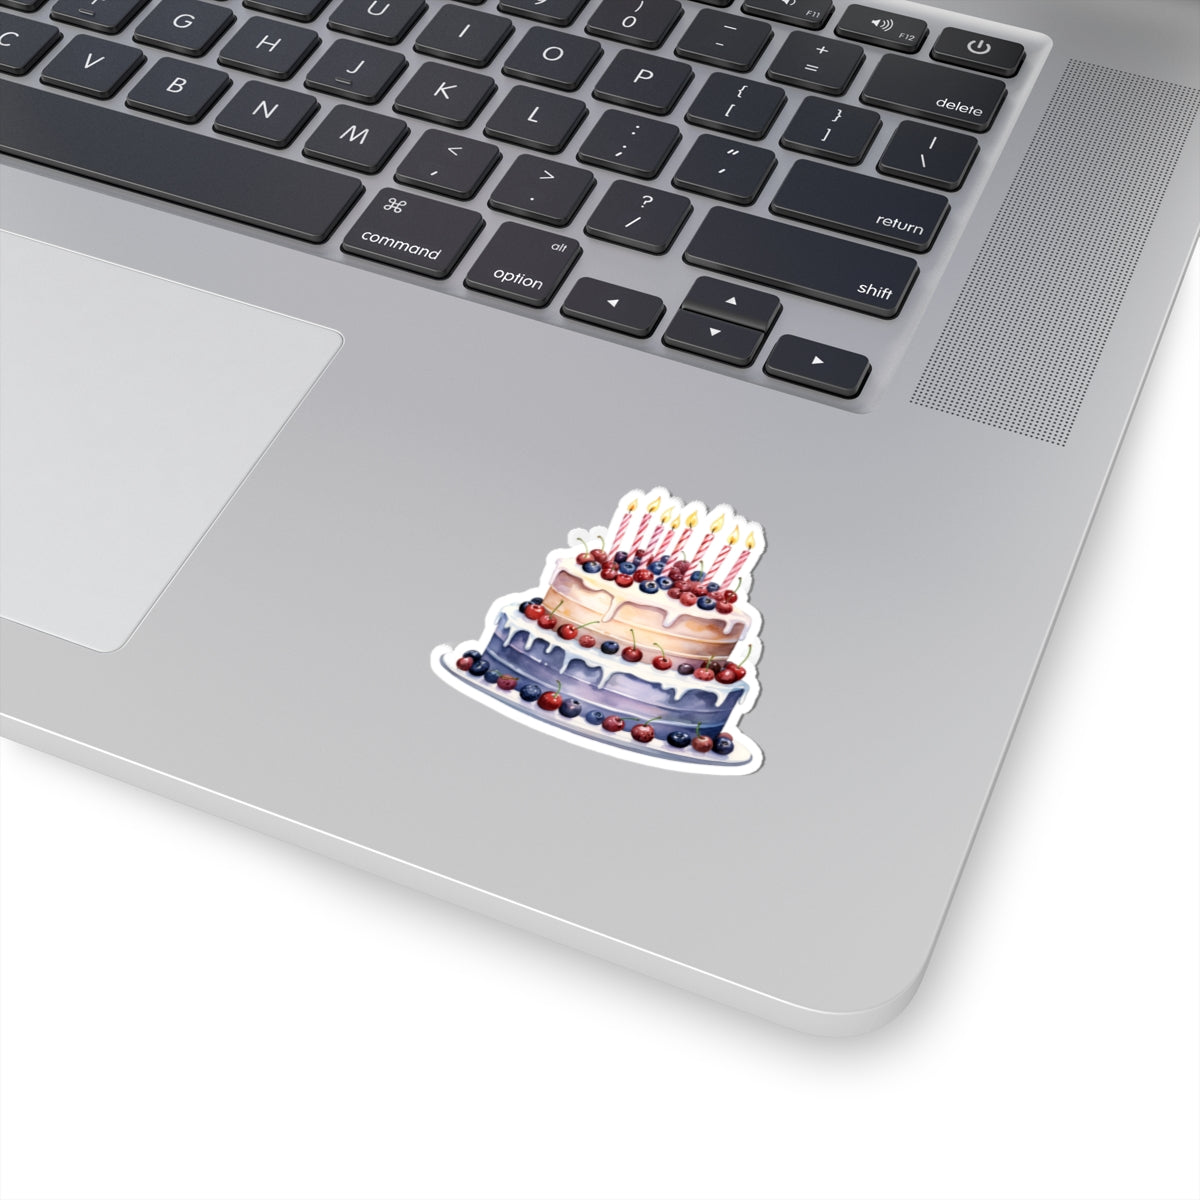 Cake Sticker